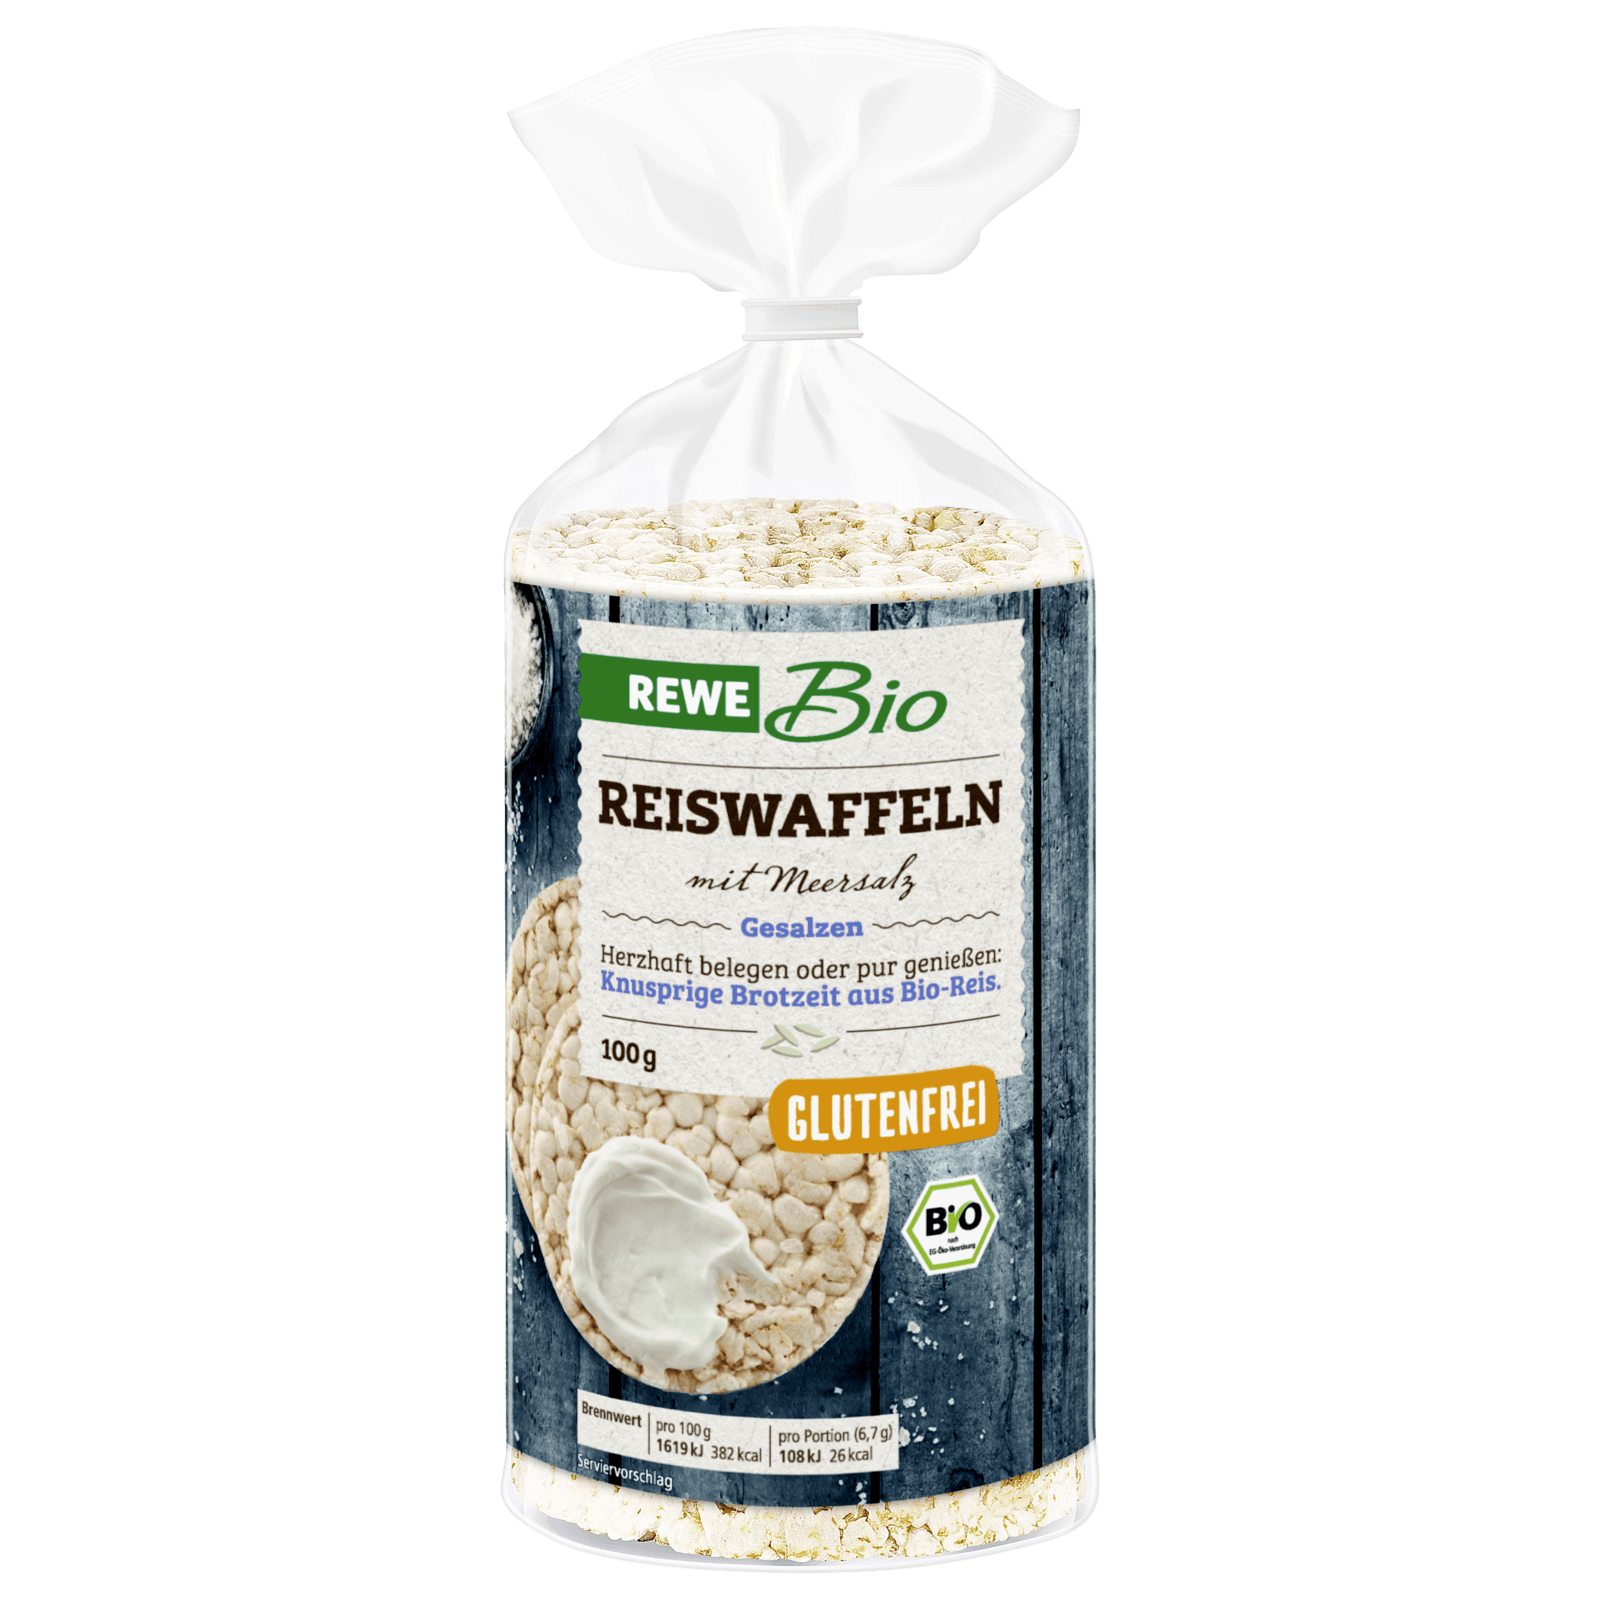 REWE Bio Reiswaffeln mit Meersalz 100g